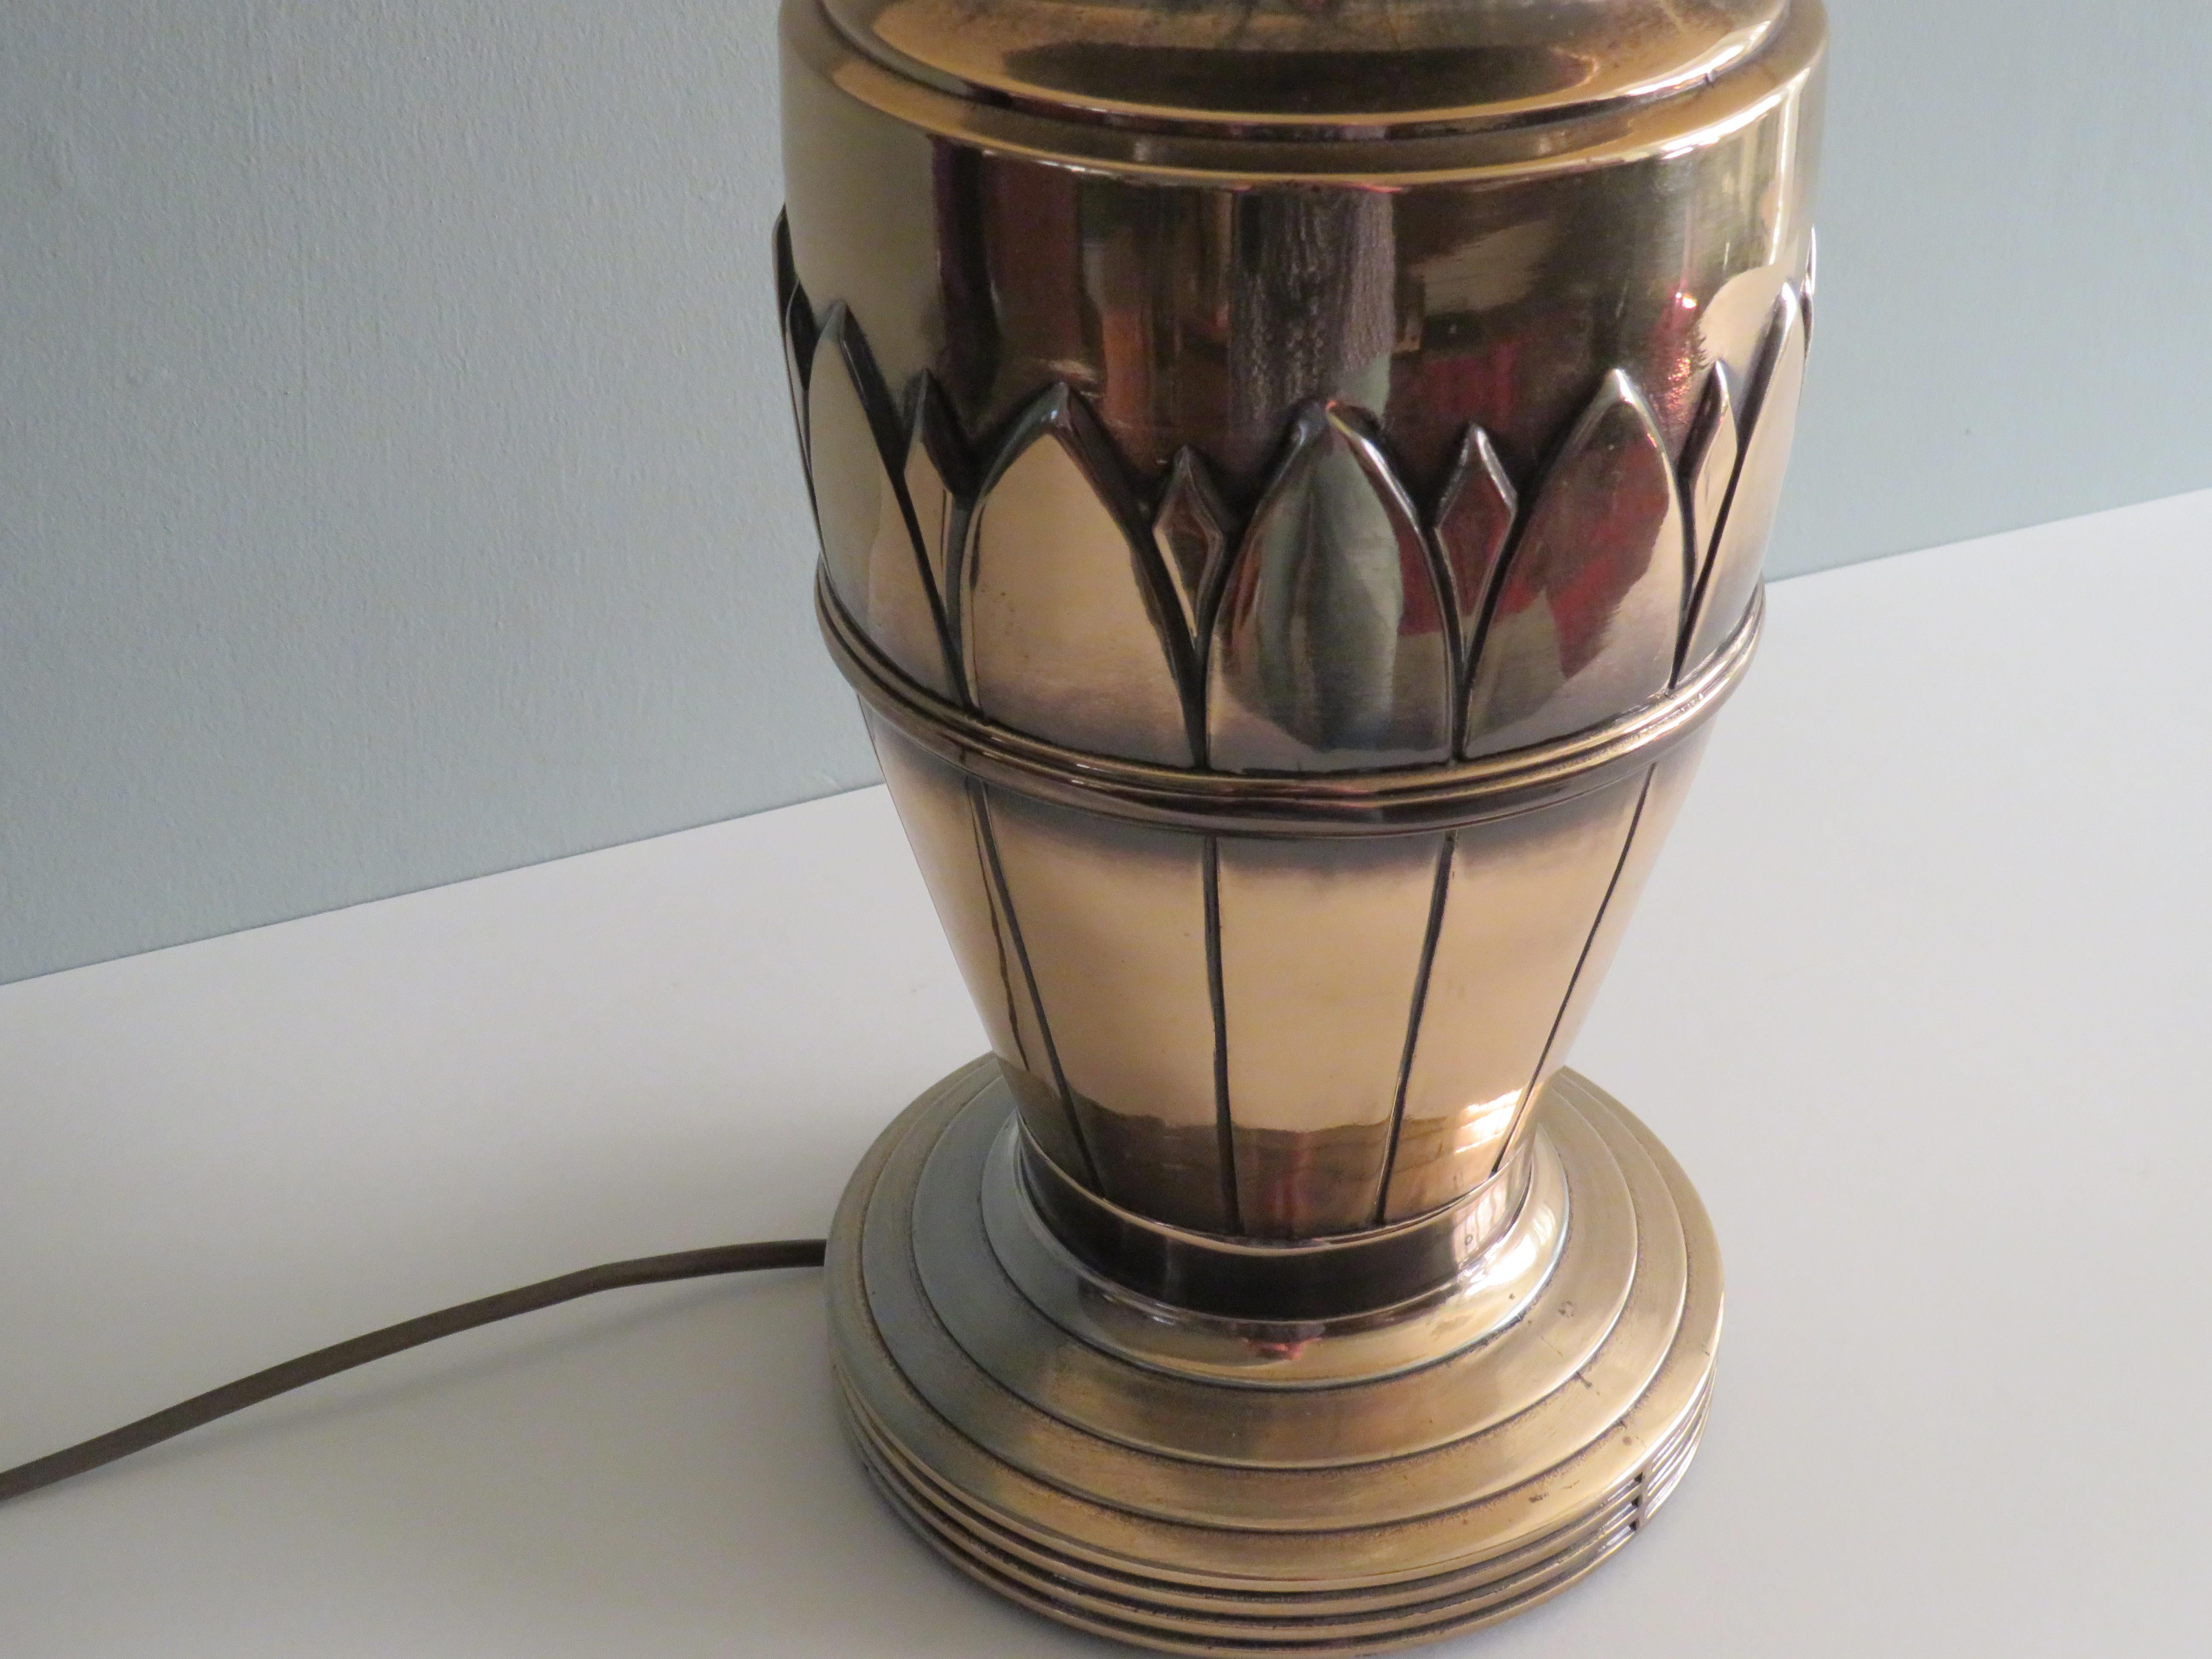 Lampe de table du milieu du siècle par Deknudt lighting, Belgique 1970
Grande lampe de table en laiton avec motif de feuilles et abat-jour original de couleur crème.
Cette lampe a été fabriquée par Deknudt, Belgique, dans les années 1970.
Deknudt